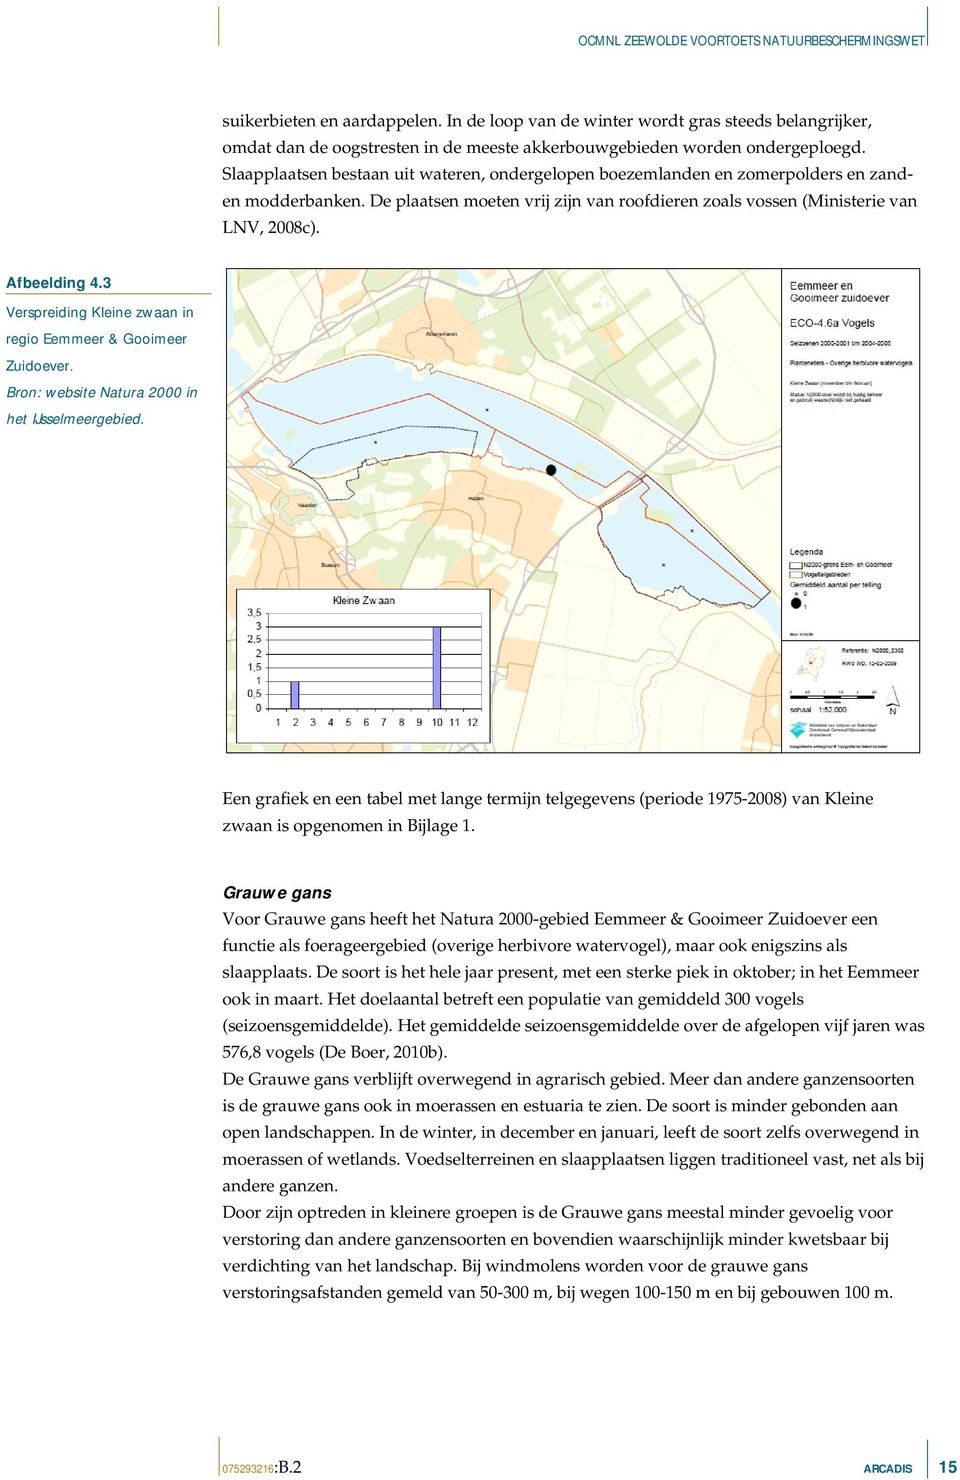 3 Verspreiding Kleine zwaan in regio Eemmeer & Gooimeer Zuidoever. Bron: website Natura 2000 in het IJsselmeergebied.